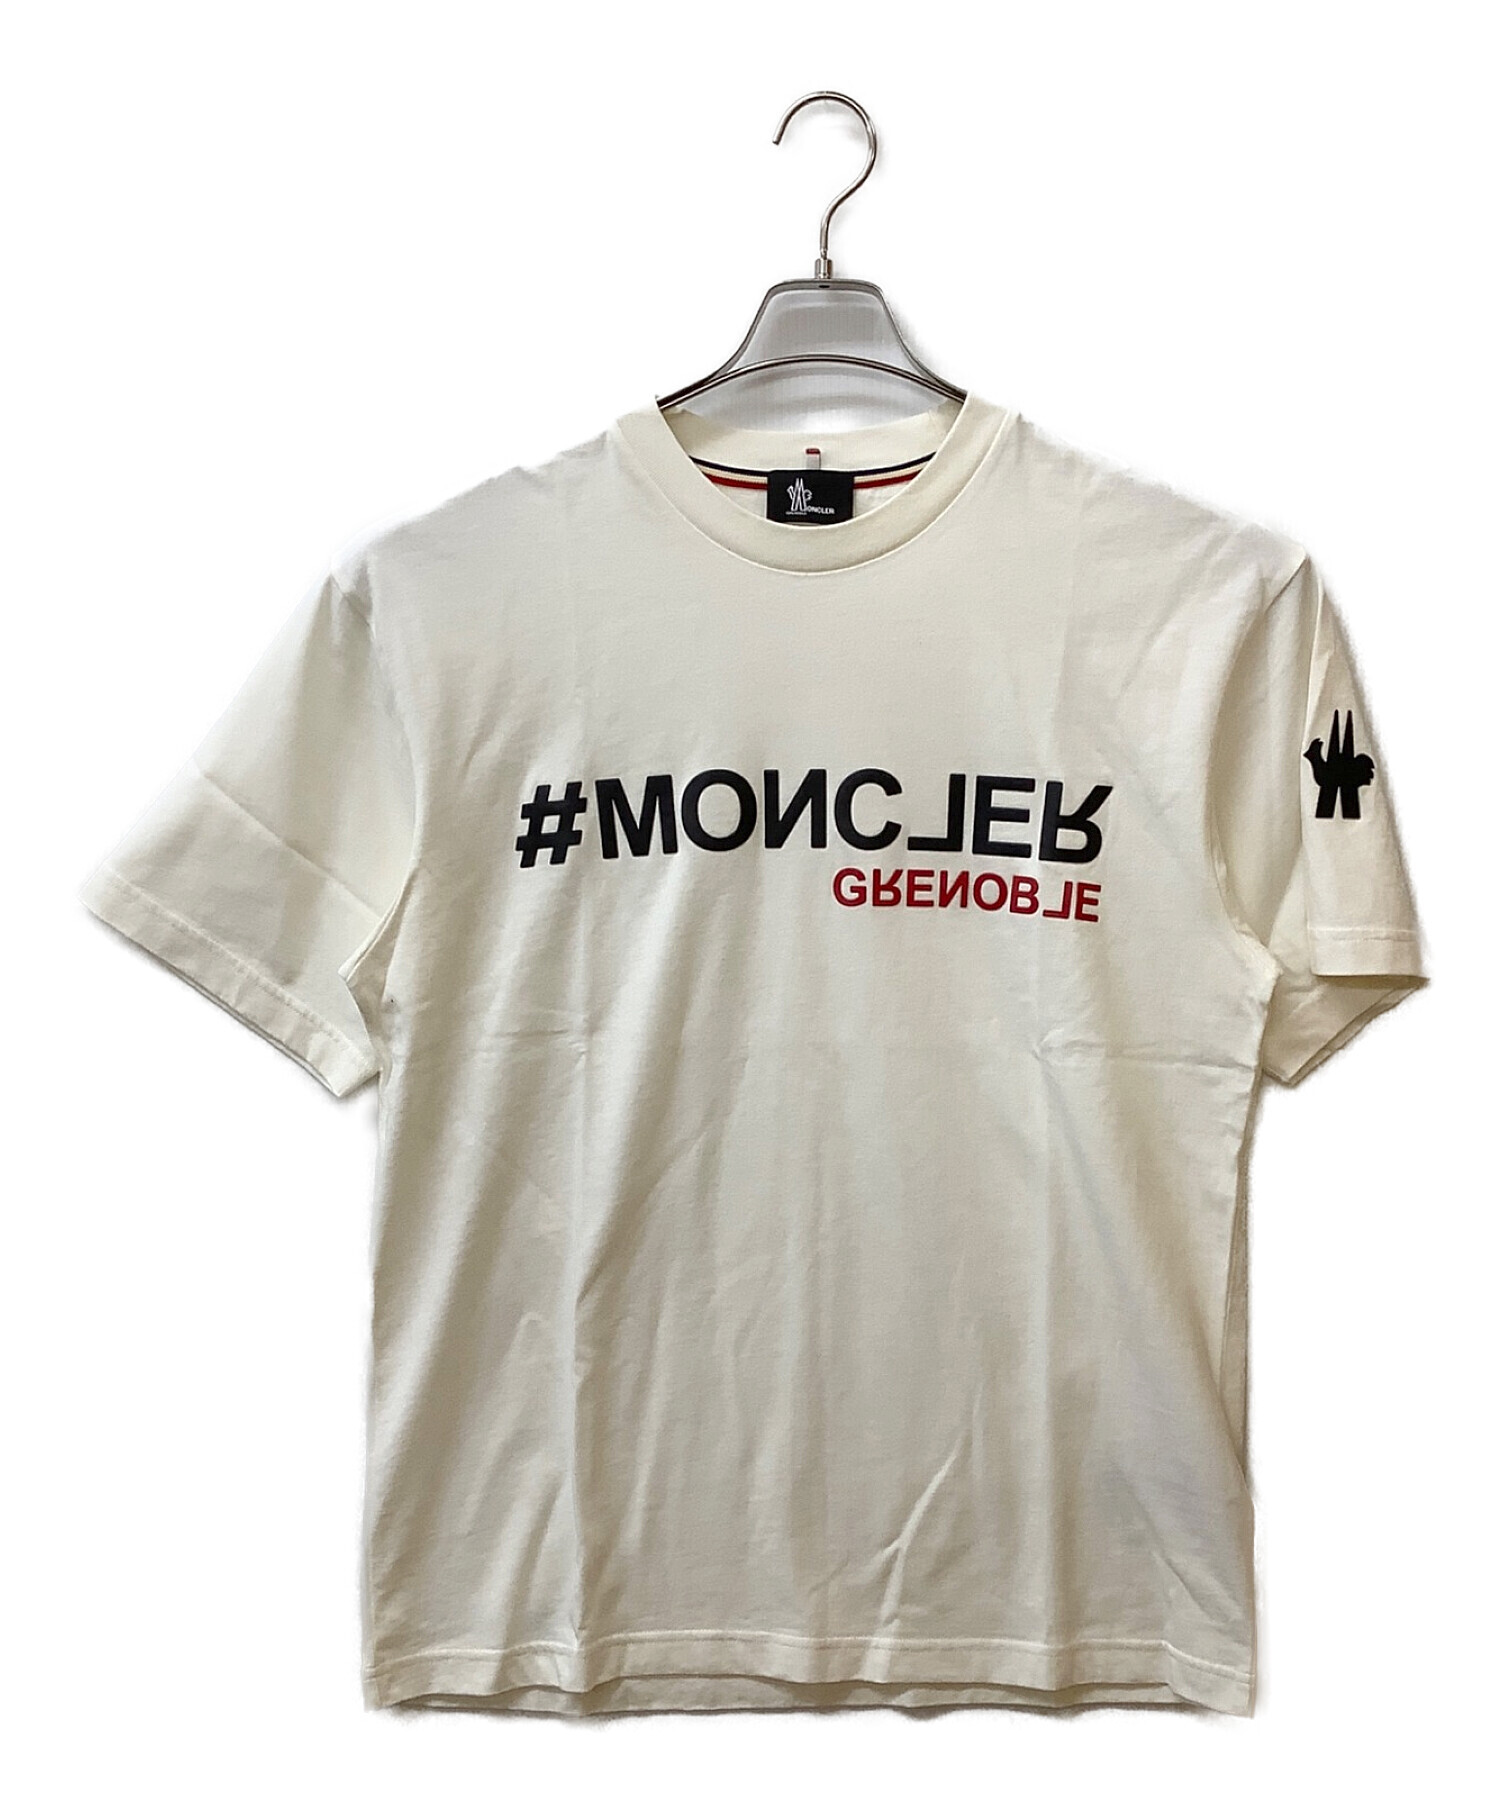 MONCLER GRENOBLE (モンクレール グルノーブル) ロゴプリントTシャツ ホワイト サイズ:L